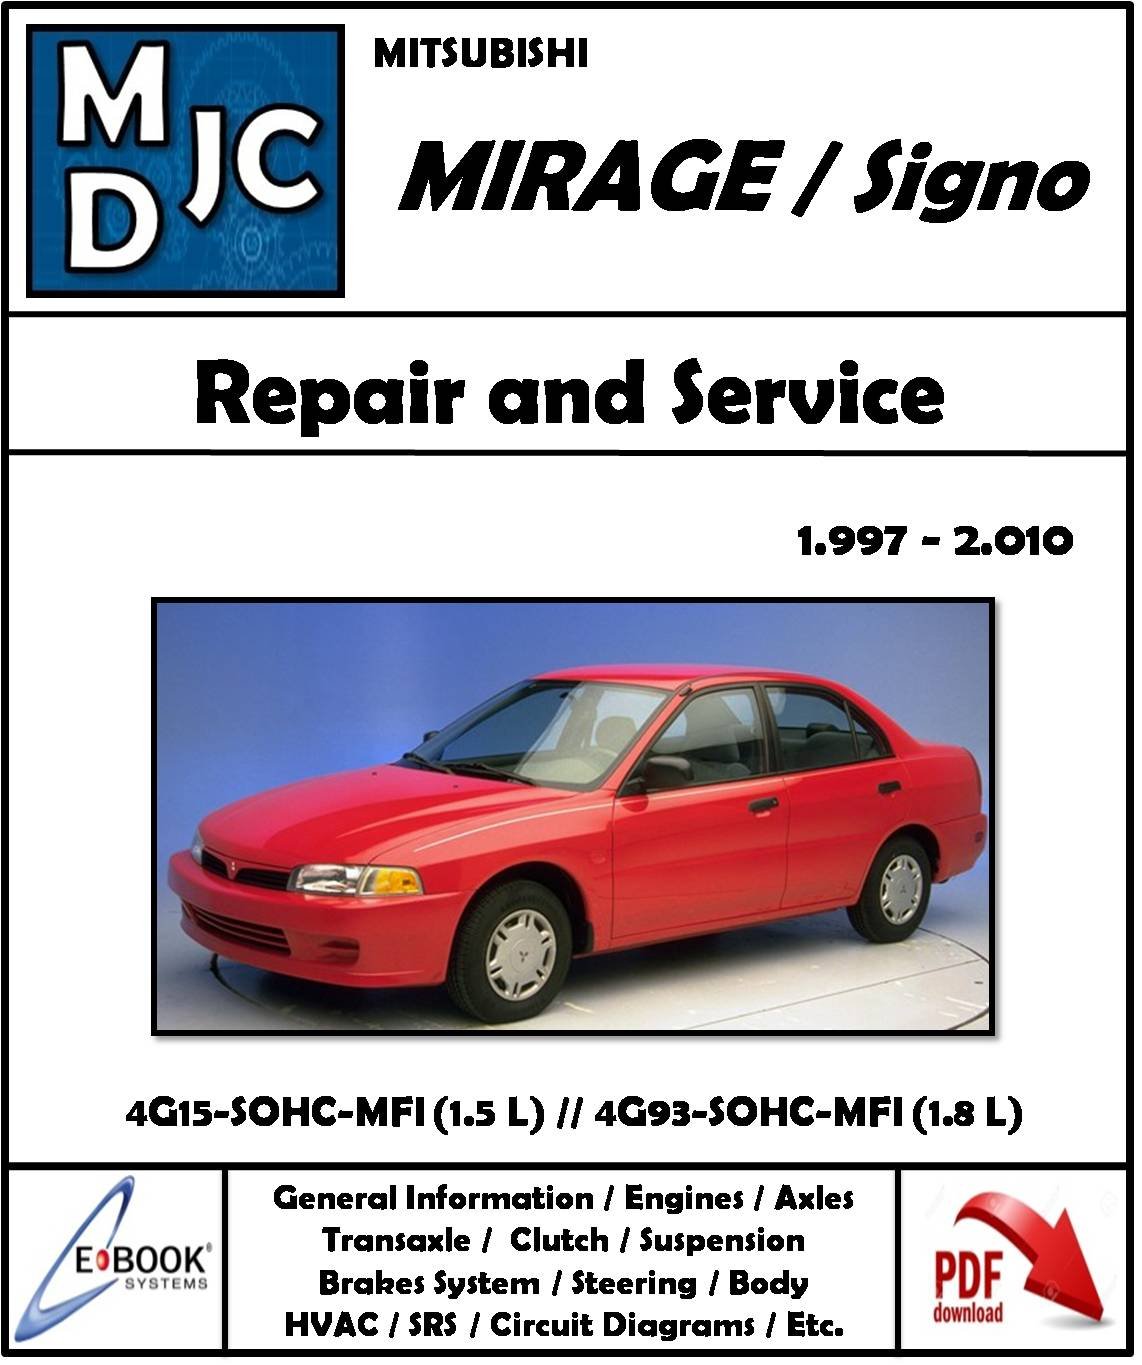 Mitsubishi Mirage / Signo / 1997 - 2010